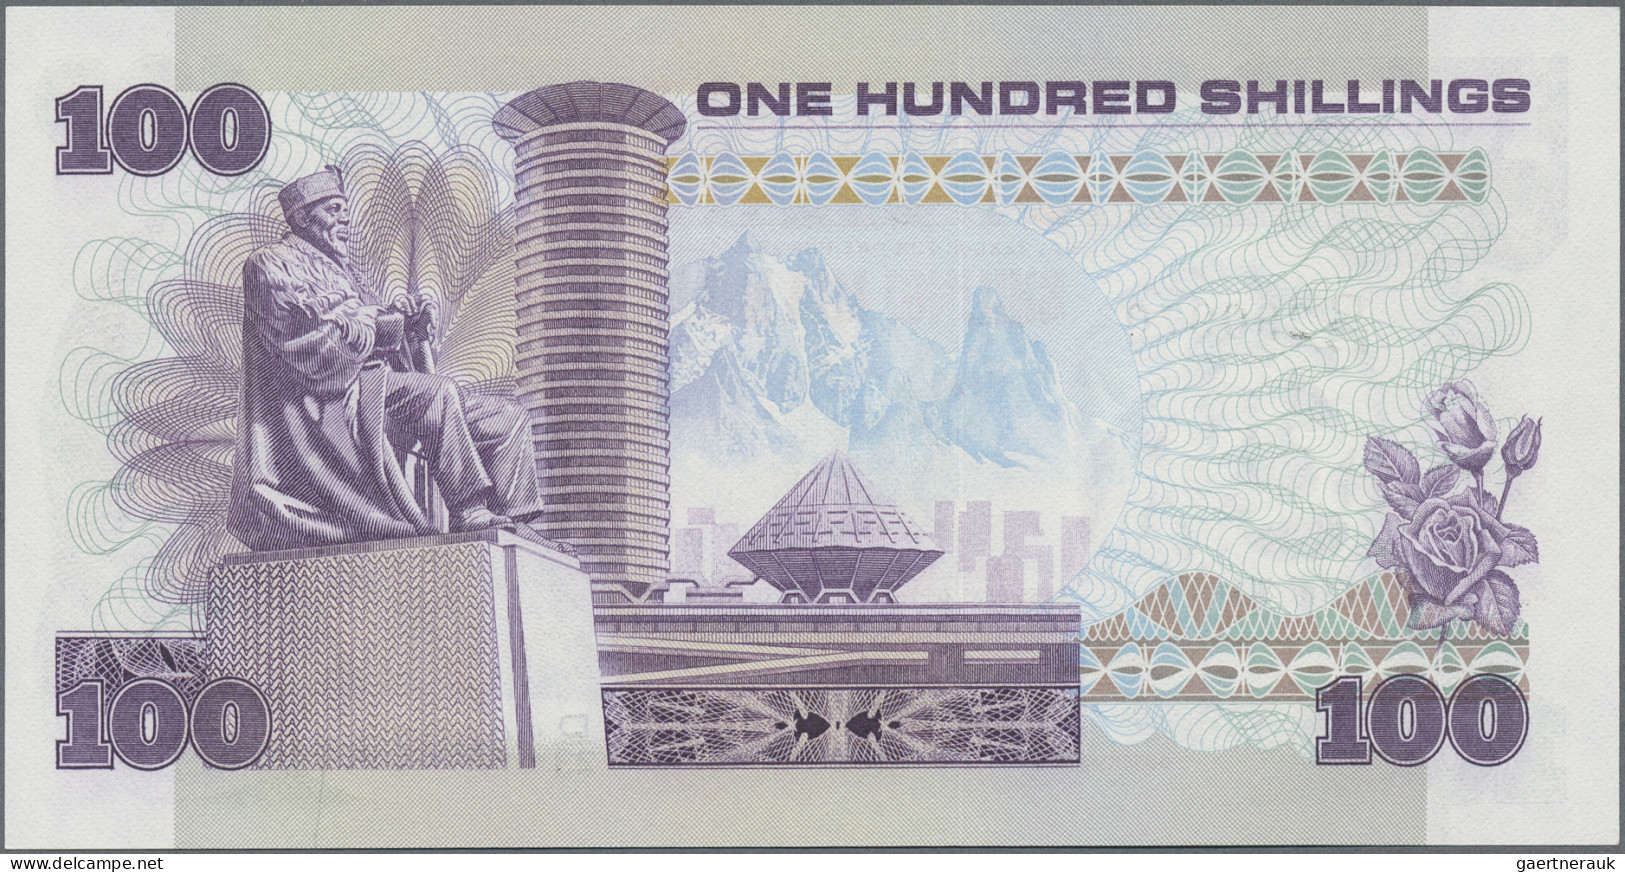 Kenya: Central Bank Of Kenya, Giant Lot With 40 Banknotes, Series 1978-2008, Com - Kenya